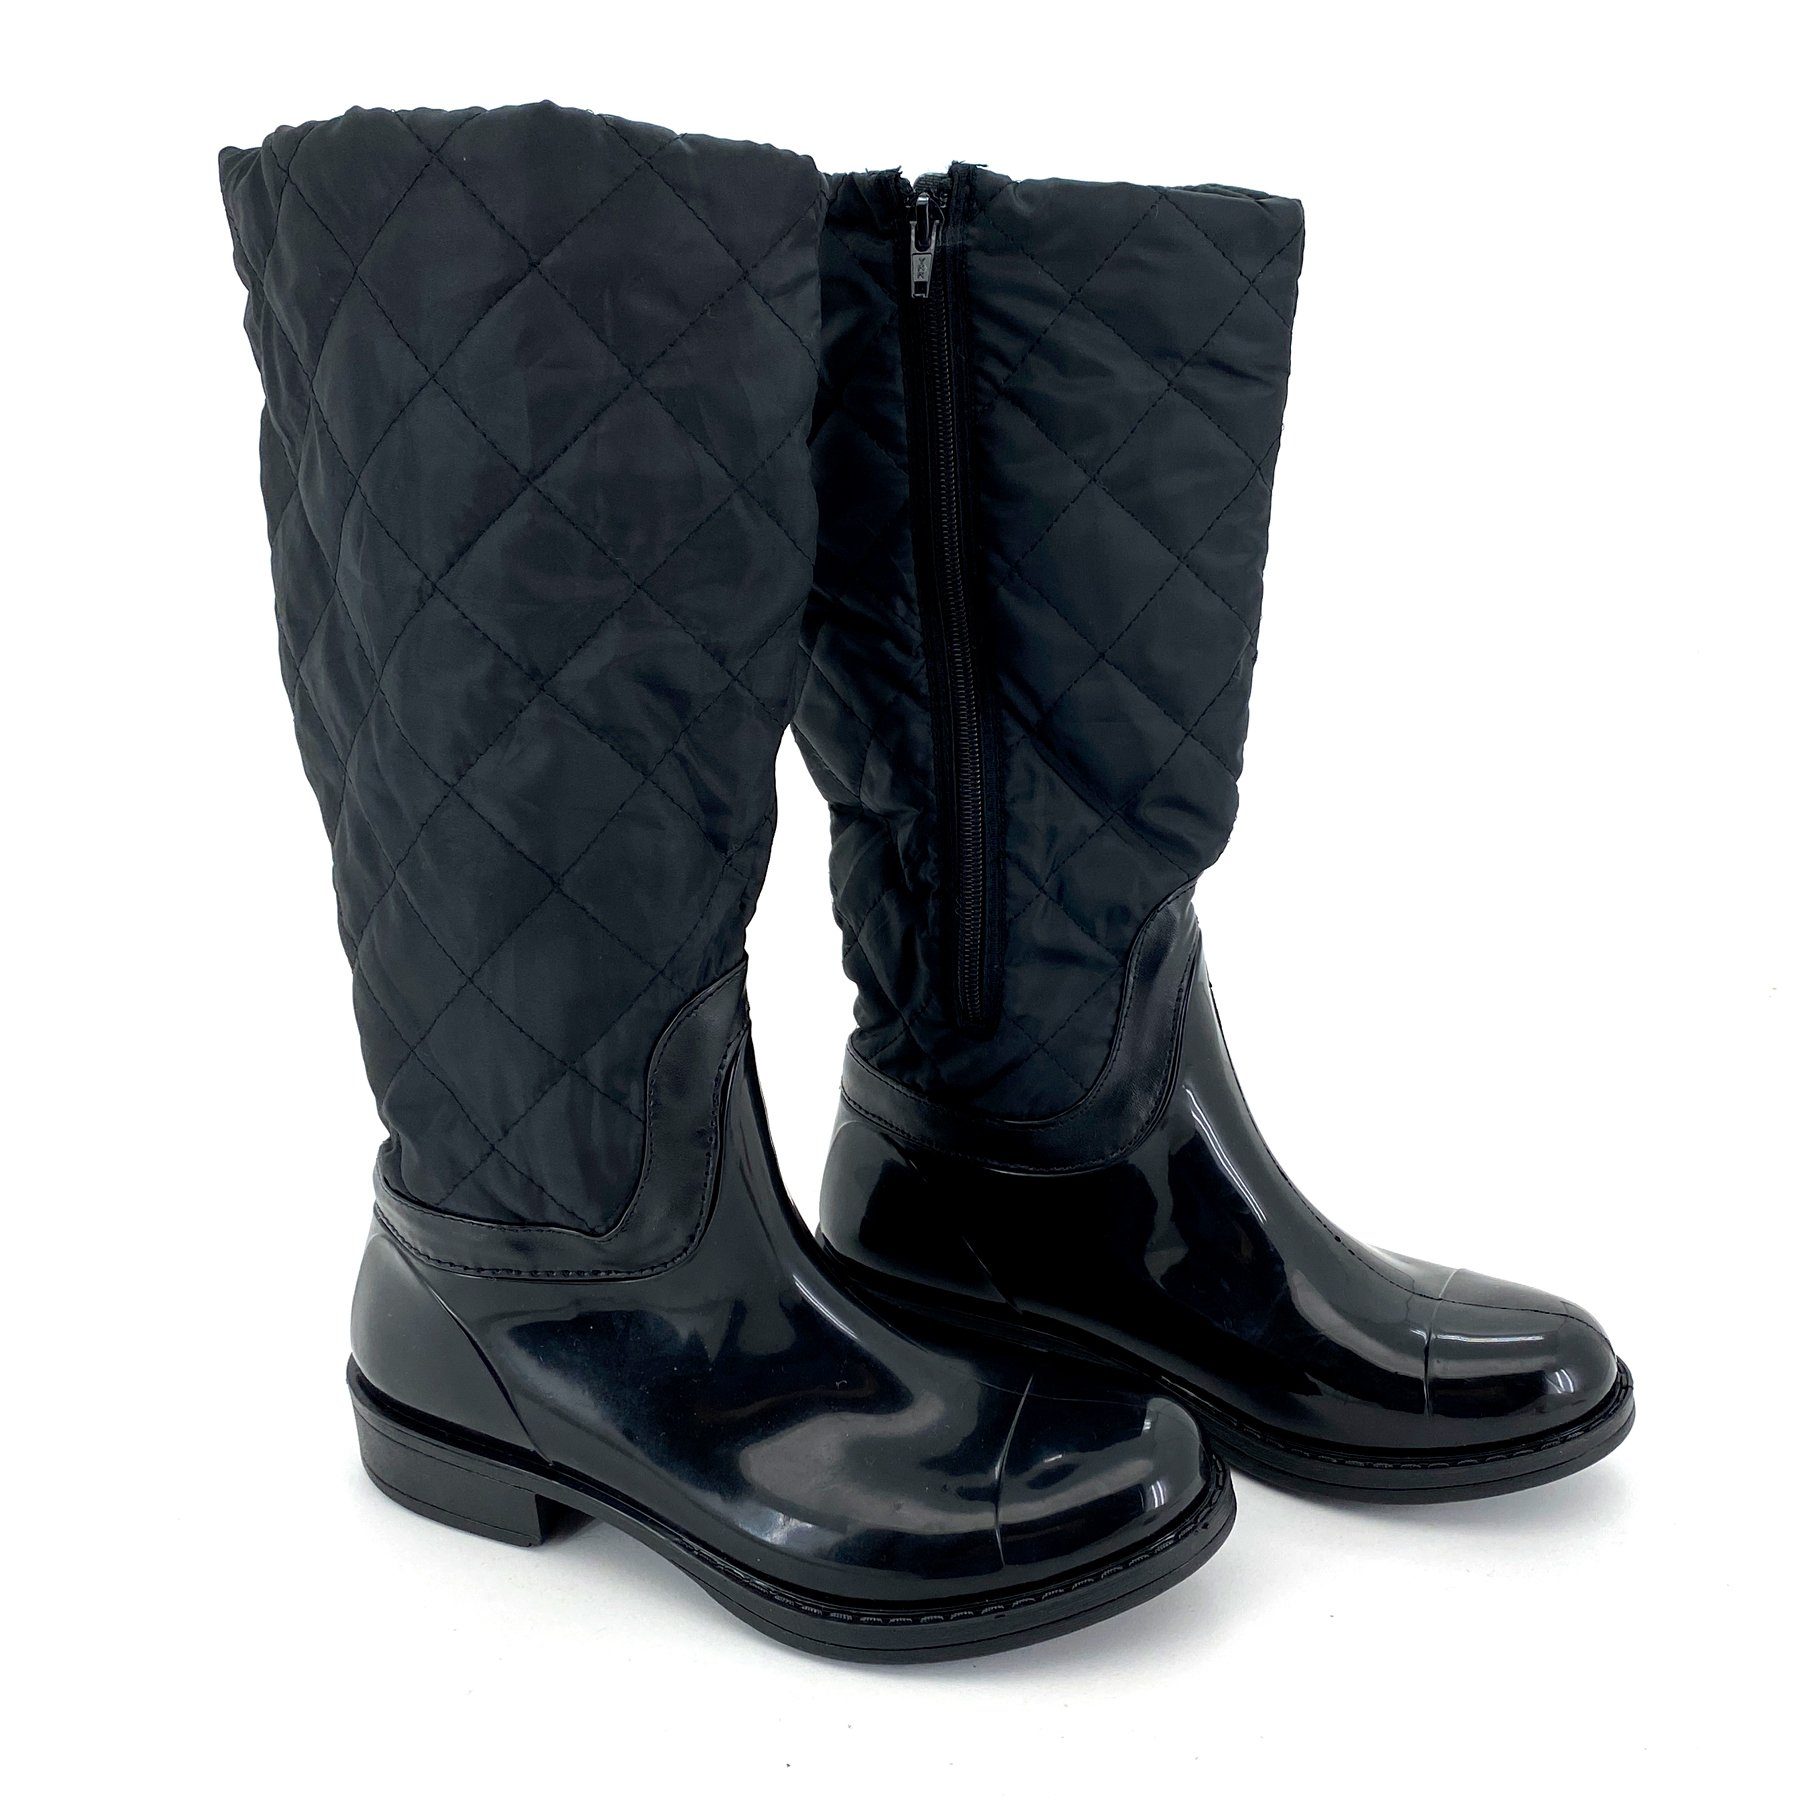 heimtexland Gummistiefel Daunen Stiefel Hochschaft Trend Boots Gummistiefel (Typ880) gesteppt I wasserdicht I Damen Mädchen Regenstiefel